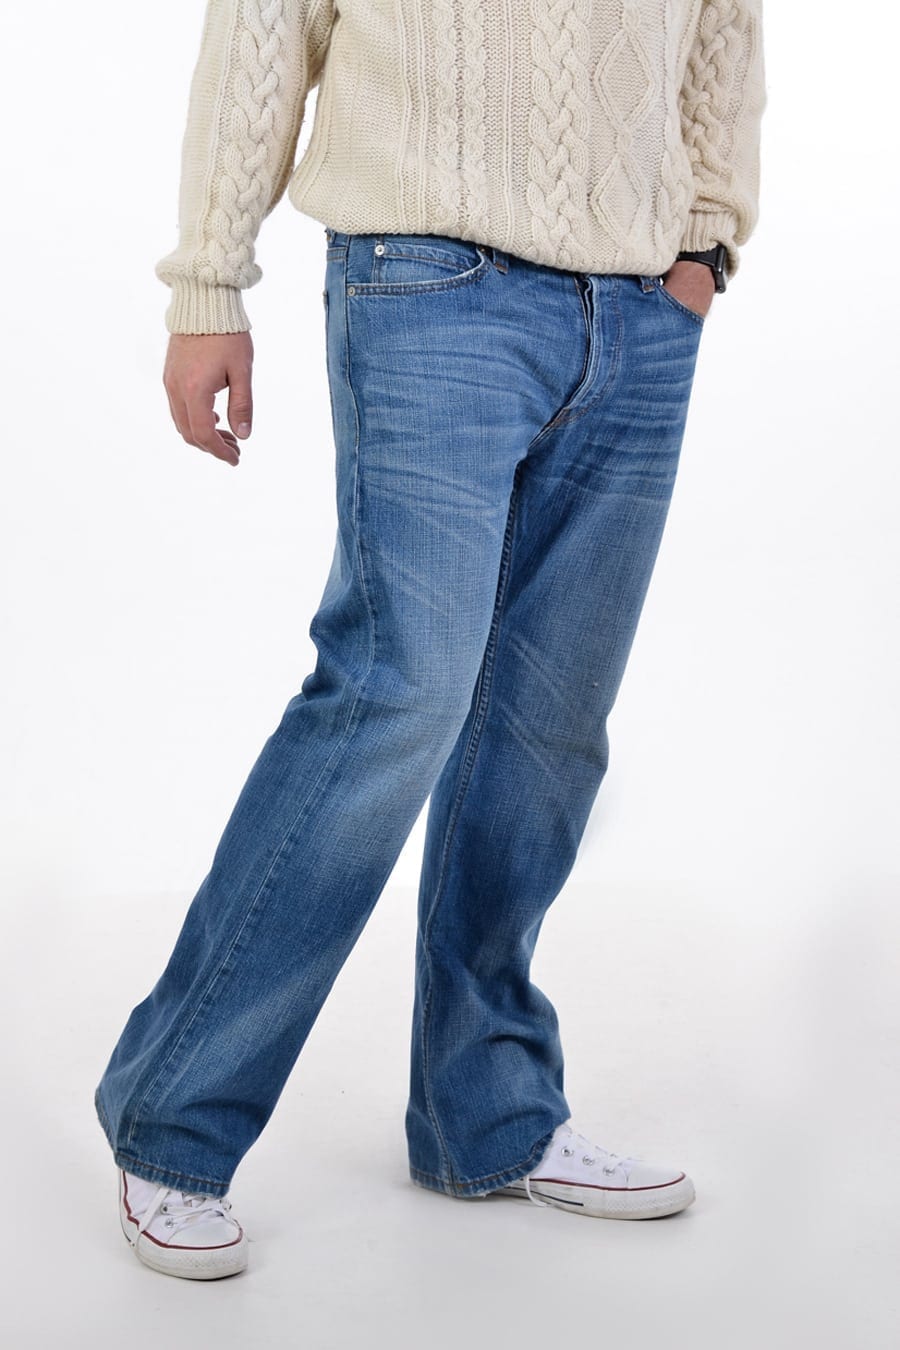 Vintage Levi's 507 Boot Cut Jeans 30/32 - Brick Vintage